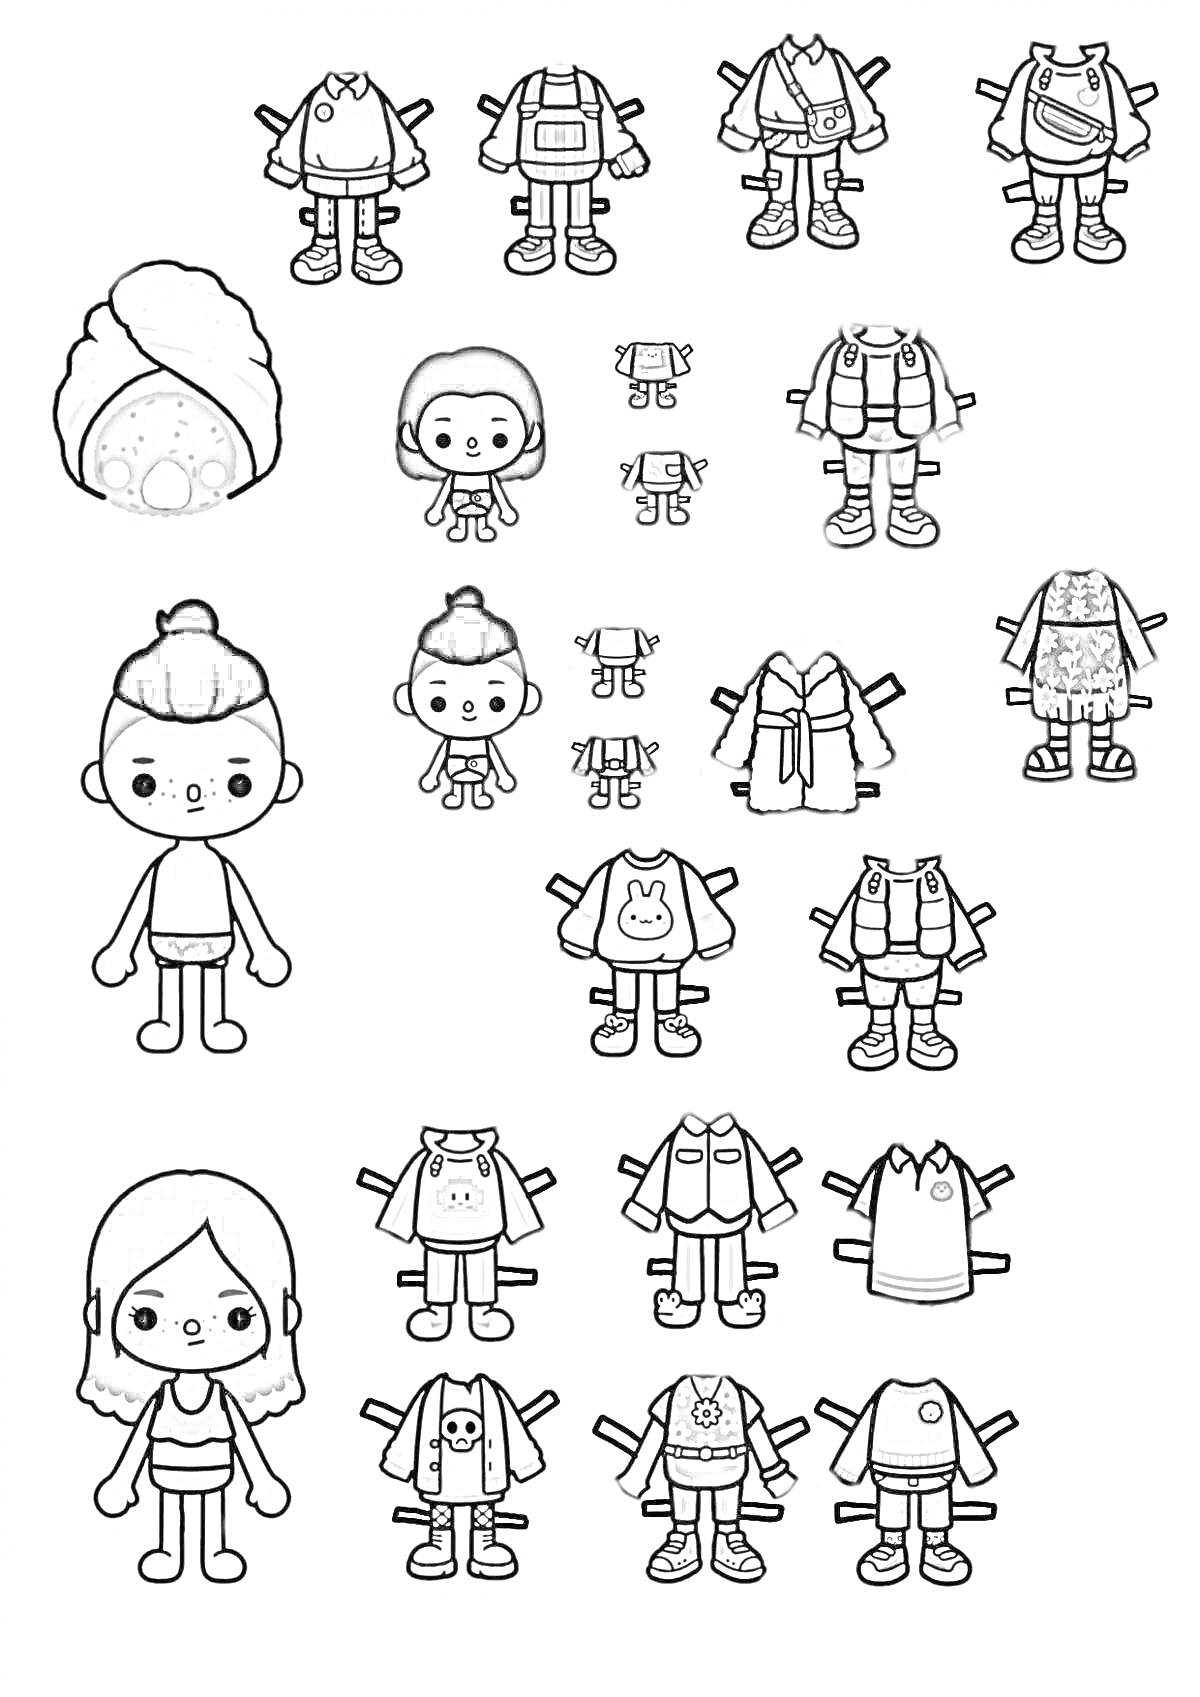 Раскраска Маленькие человечки Тока Бока с разнообразной одеждой и костюмами, включая костюм улитки, зимнюю одежду, повседневные наряды и наряд с черепом